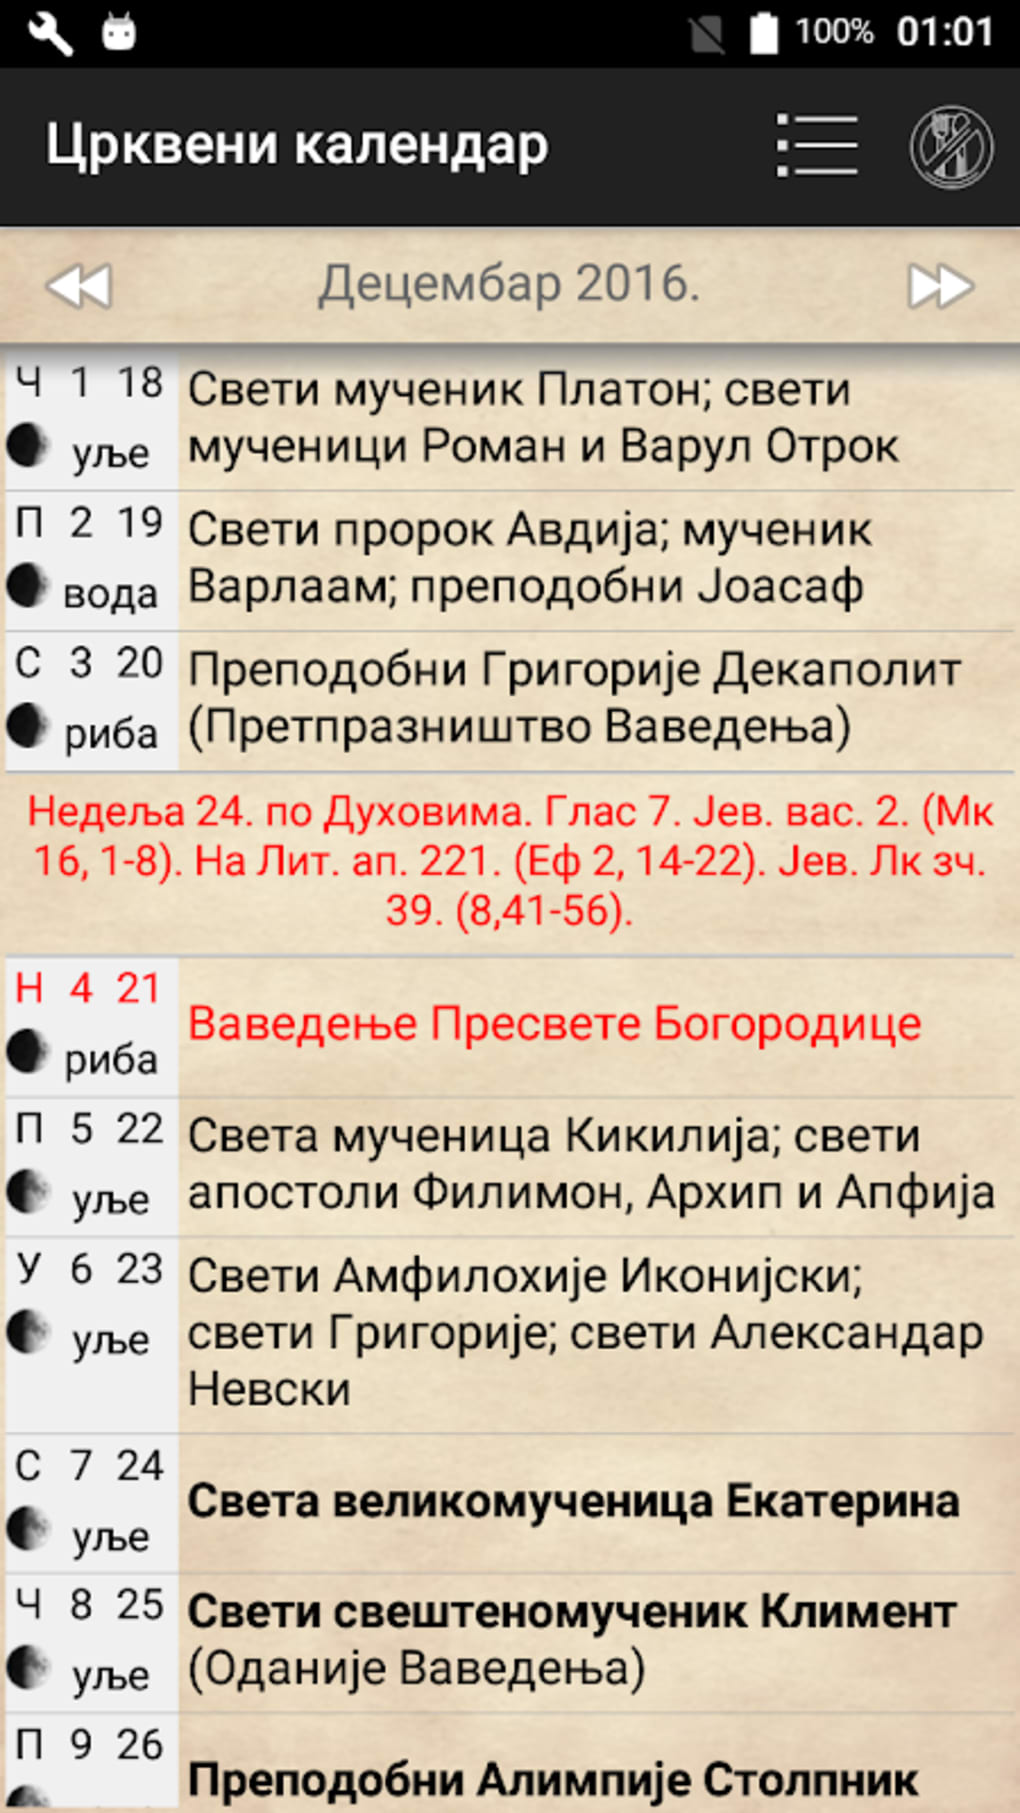 Pravoslavni kalendar APK for Android Download